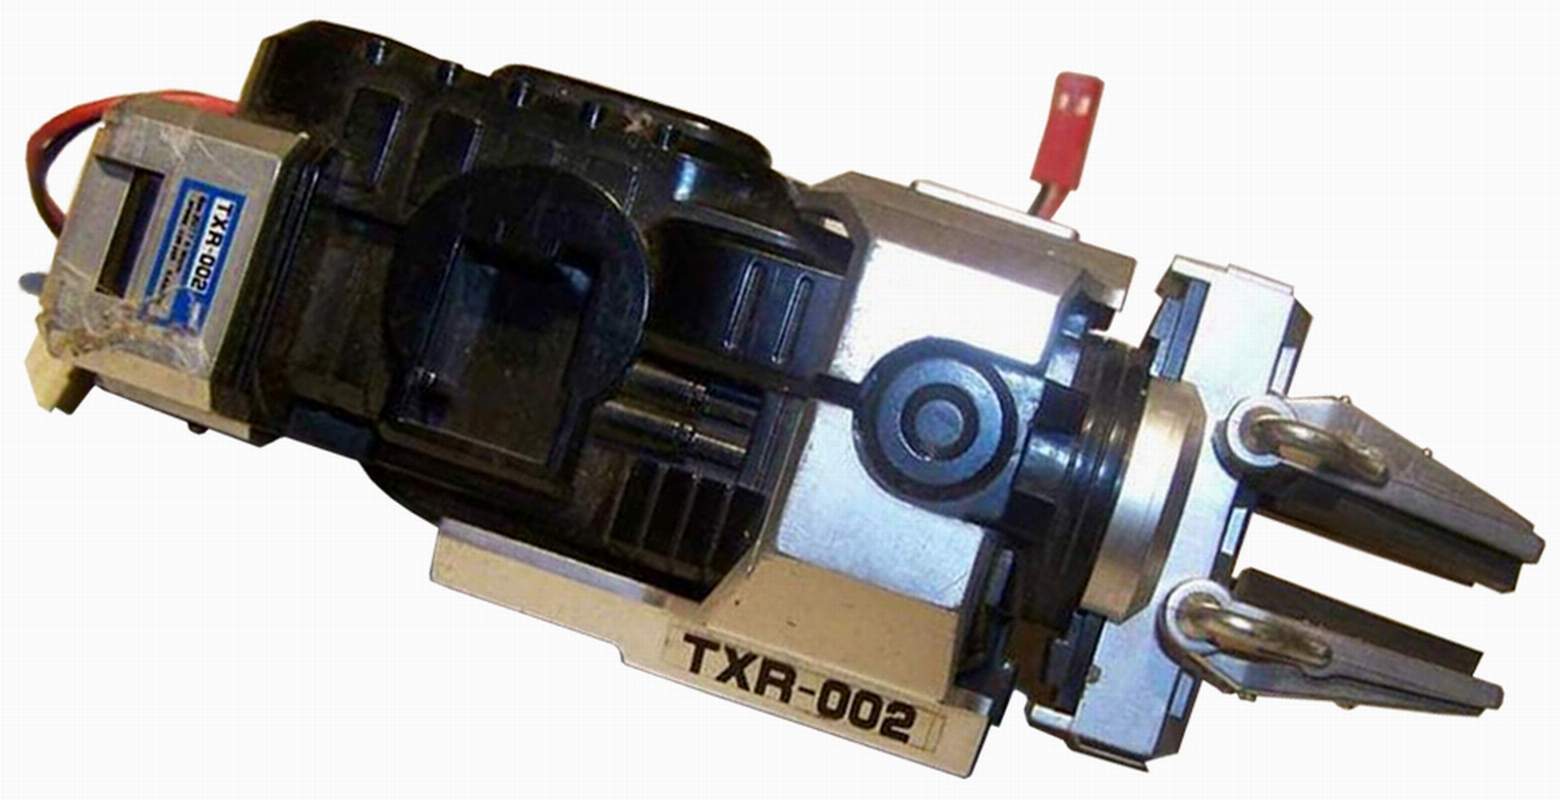 TXR-002 Arm 1 Robot by Tomy